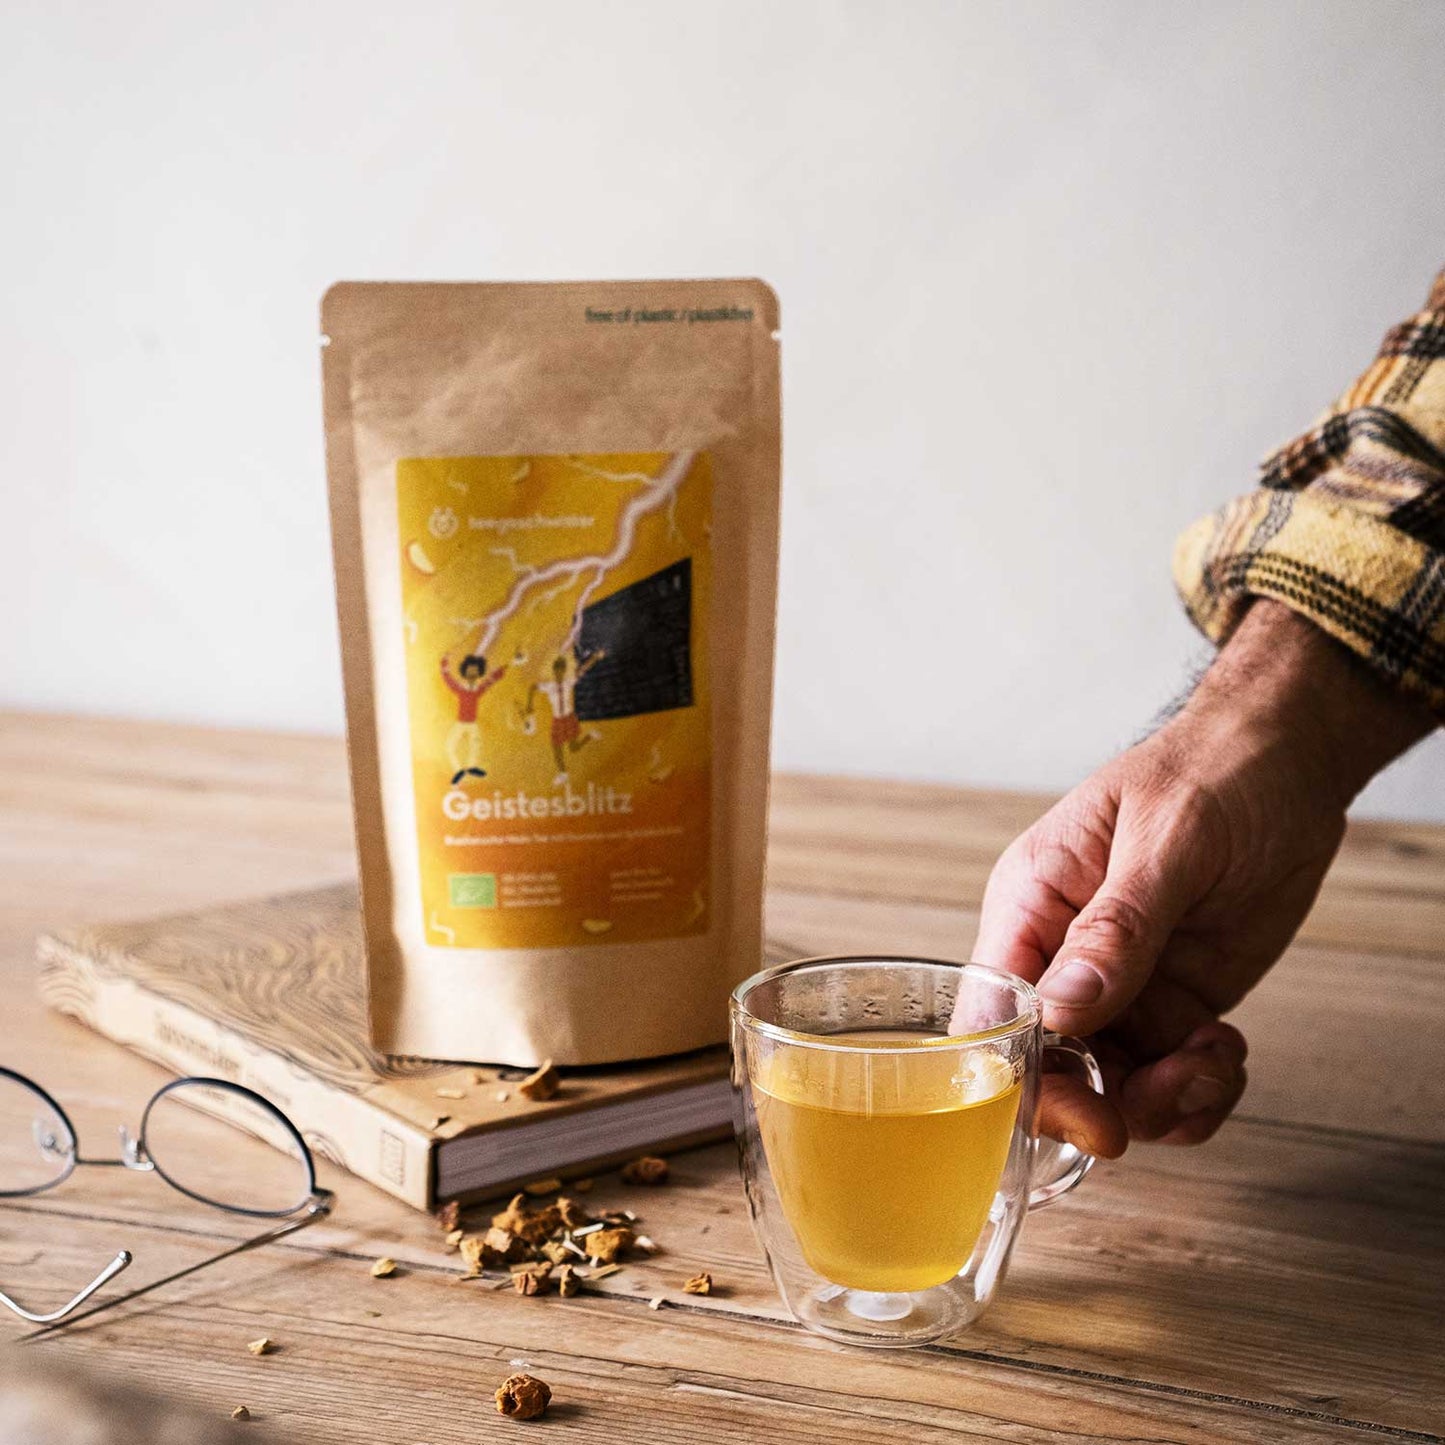 Dieses Bild zeigt die Teeverpackung und eine Hand die den aufgegossenen Guarana Tee hält.